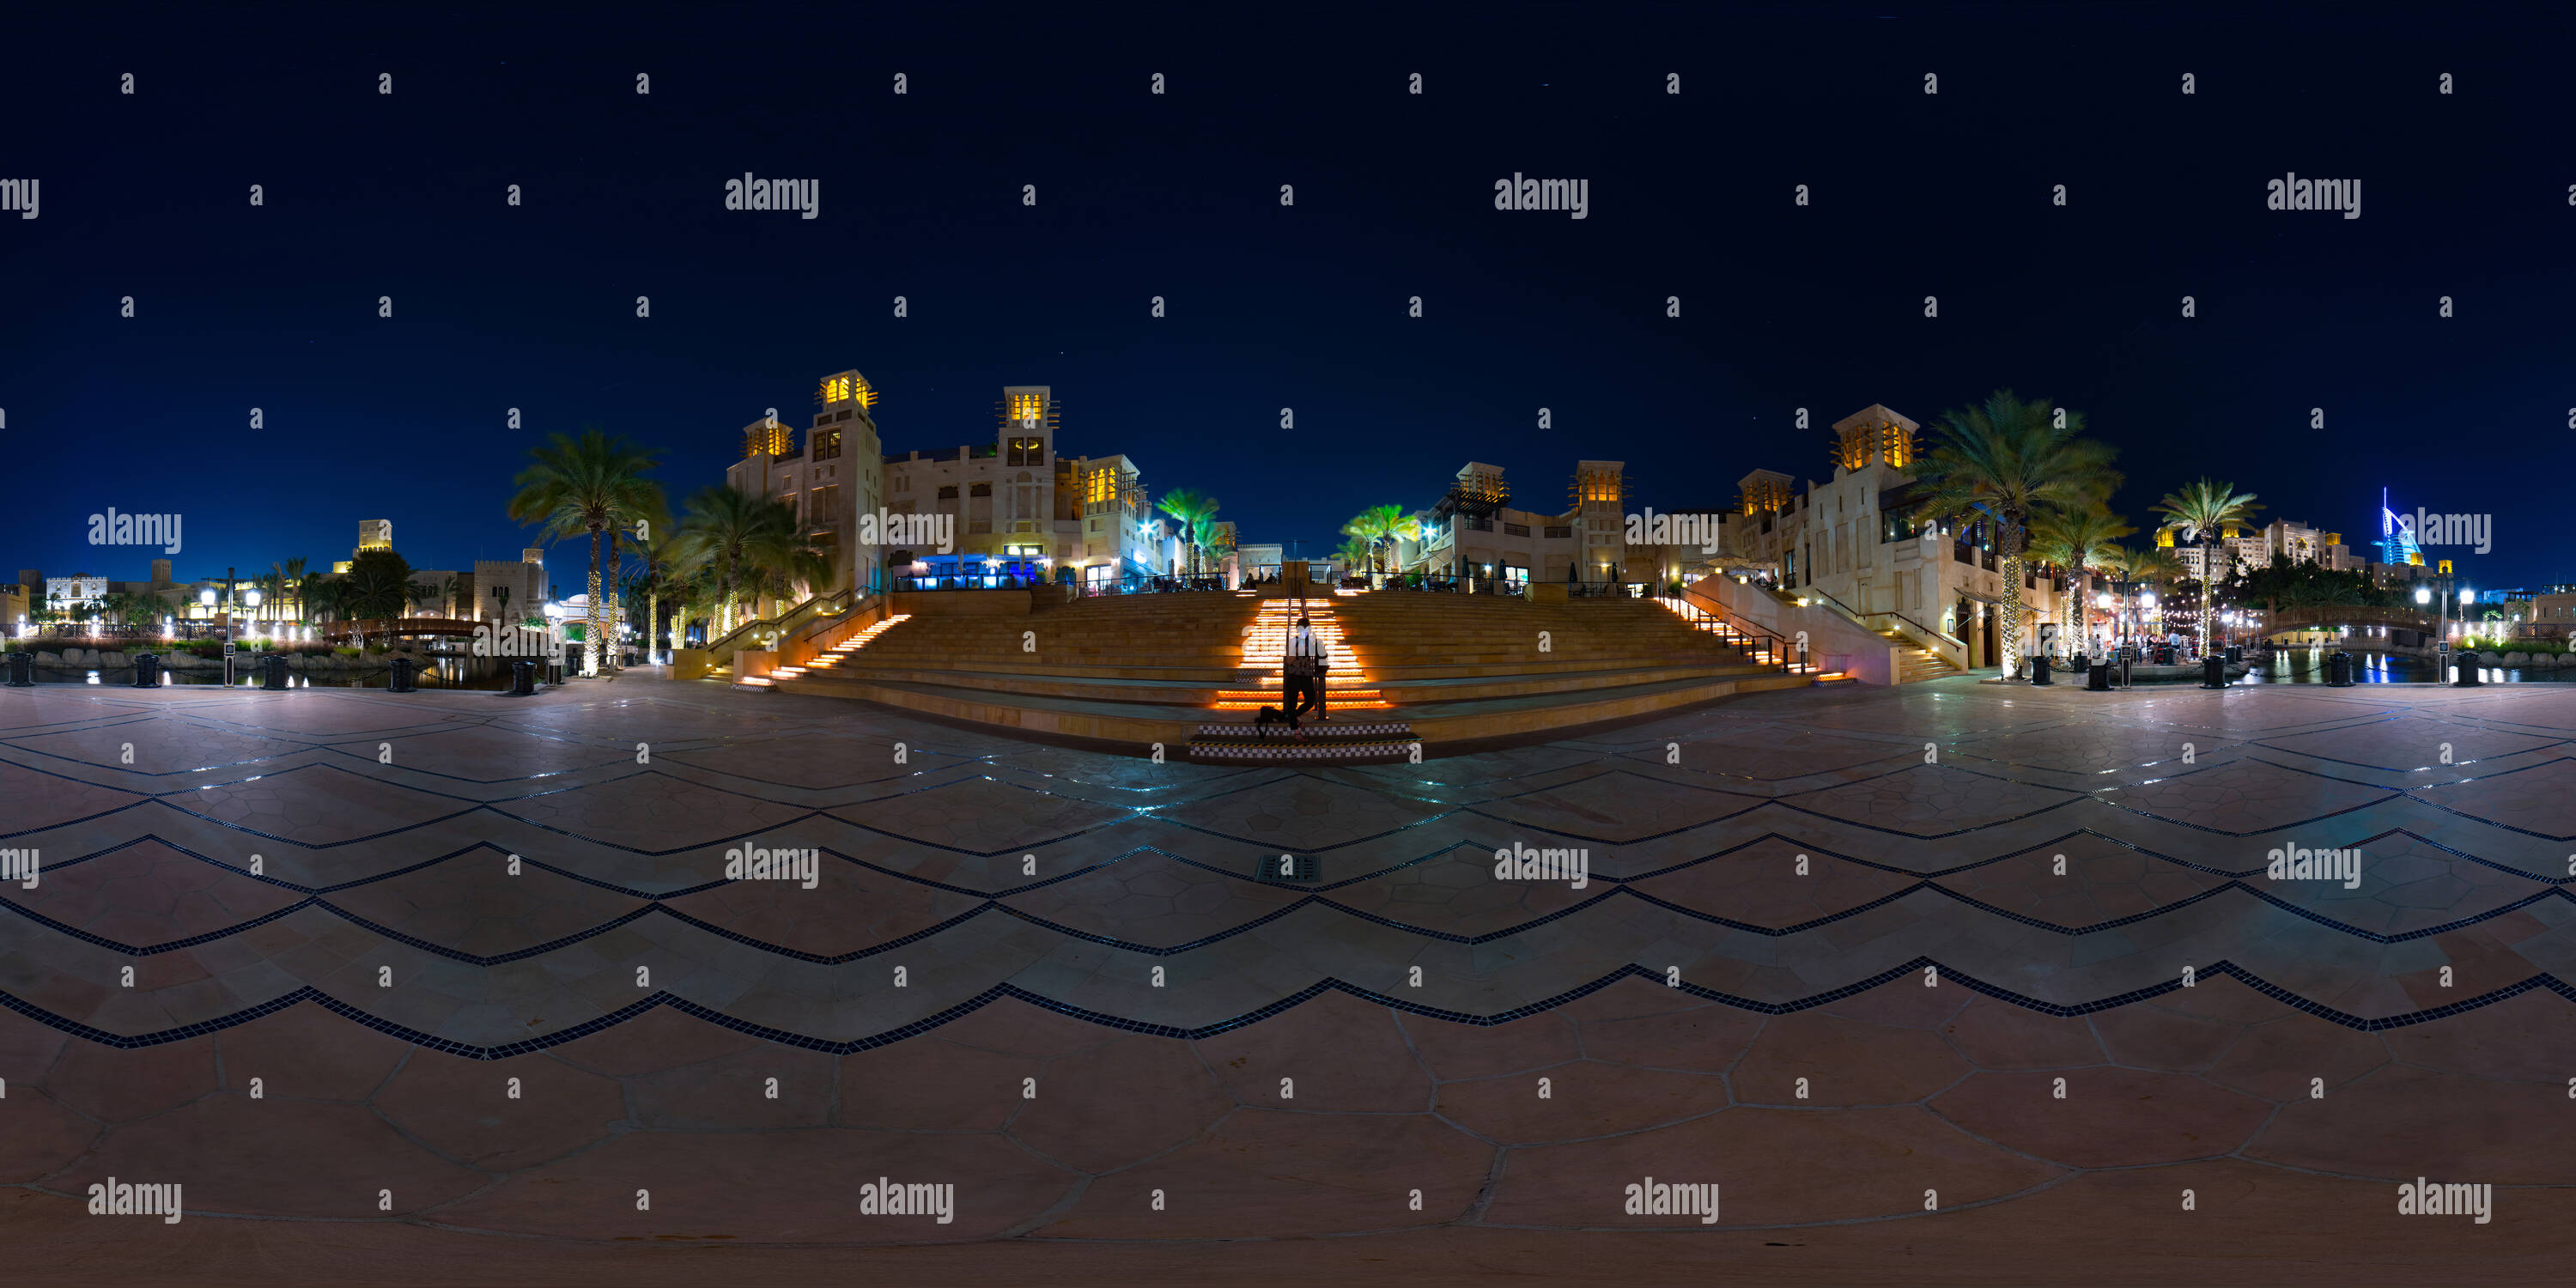 Vue panoramique à 360° de Souk Madinat Jumeirah